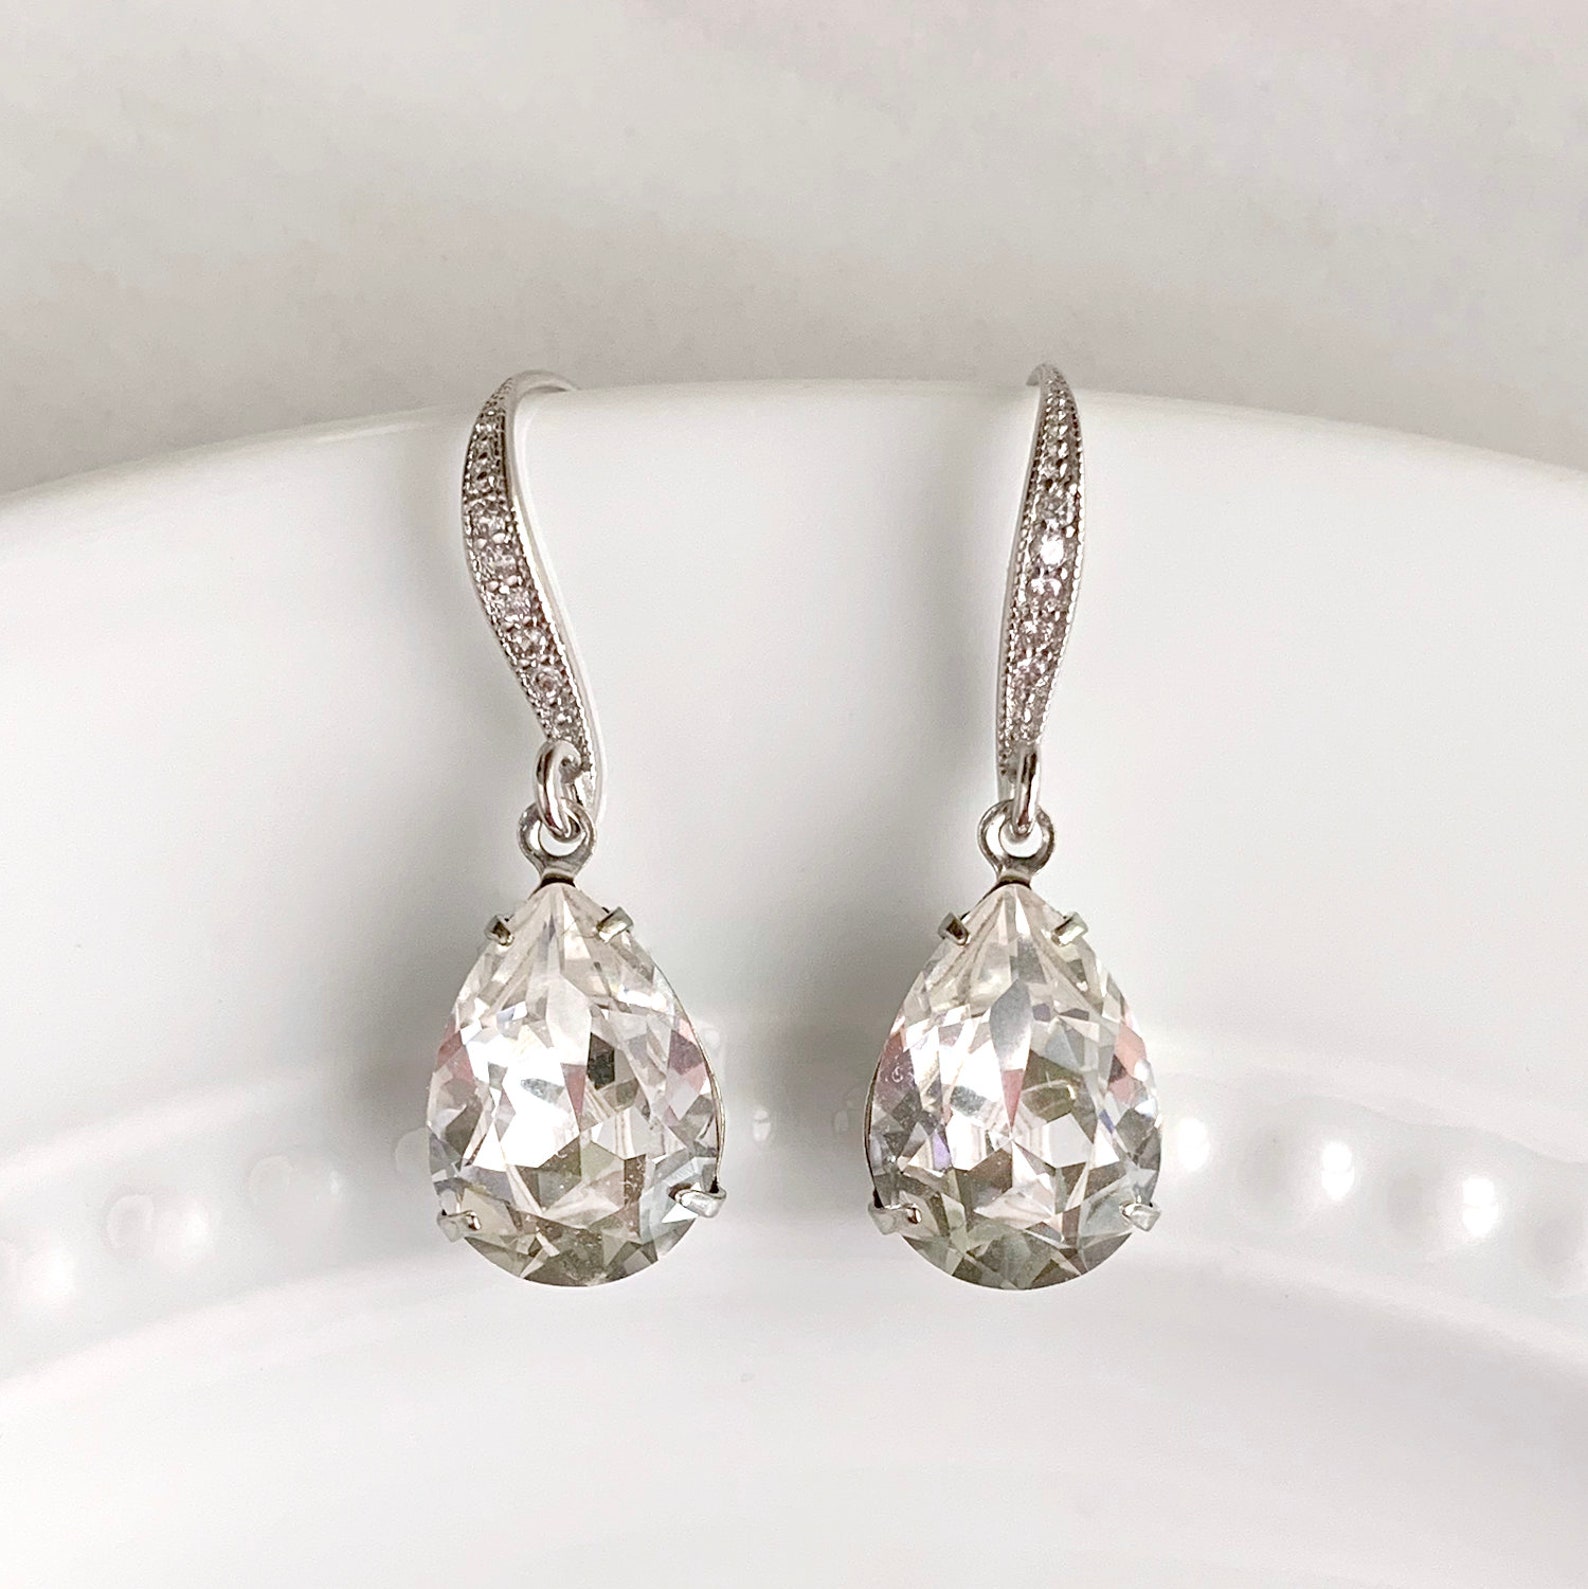 Teardrop Bridal Earrings Wedding Earrings Crystal - Etsy